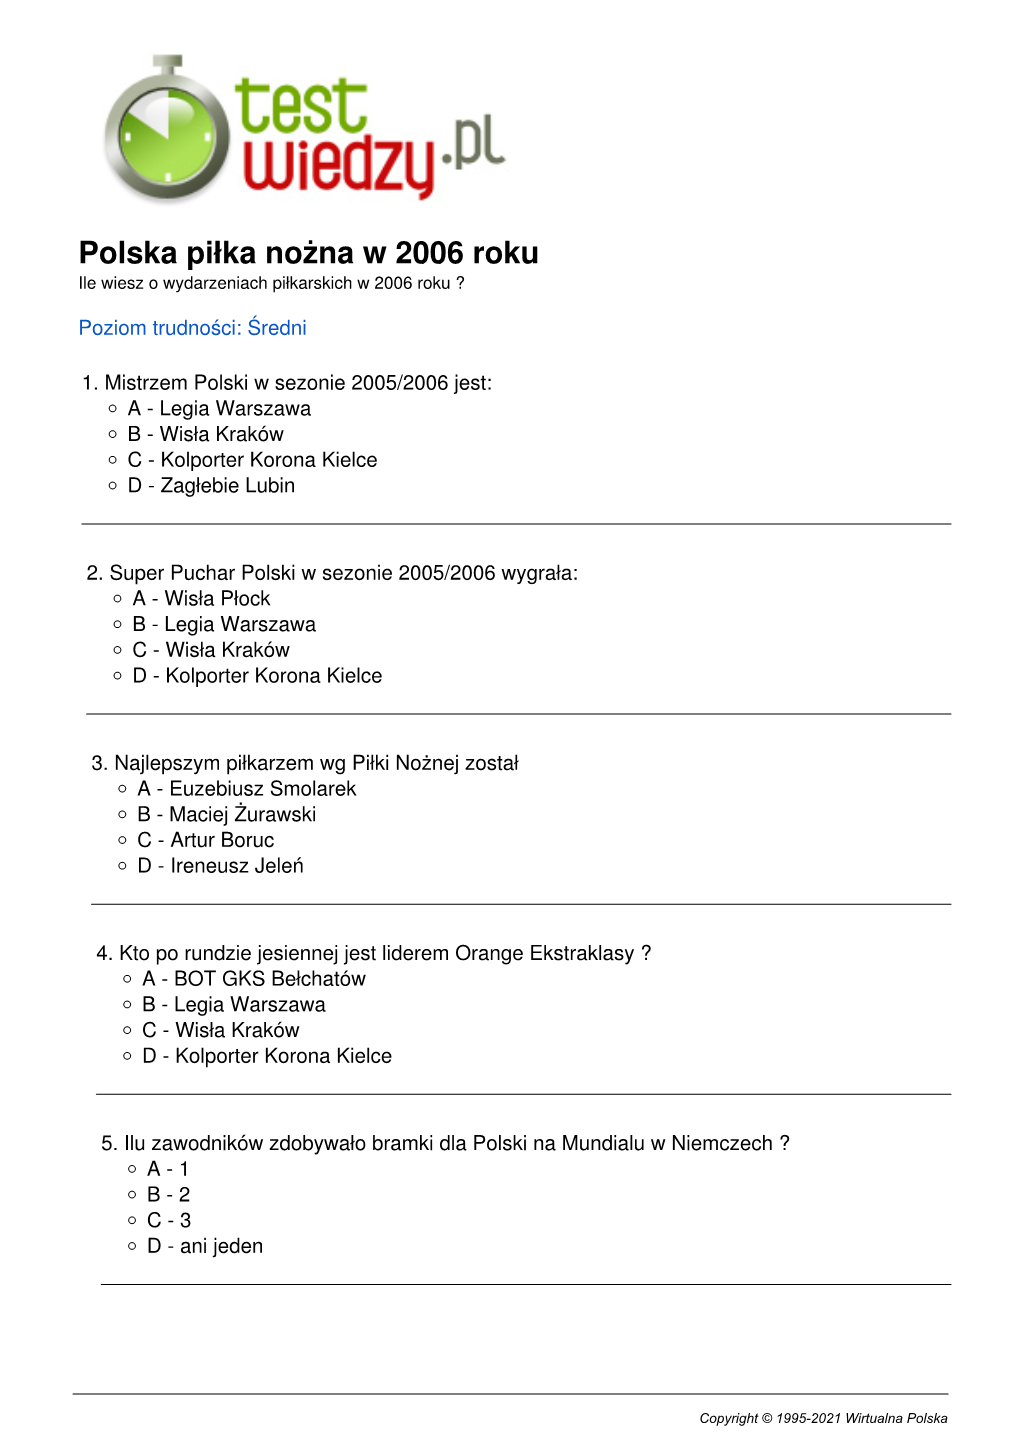 Polska Piłka Nożna W 2006 Roku Ile Wiesz O Wydarzeniach Piłkarskich W 2006 Roku ?